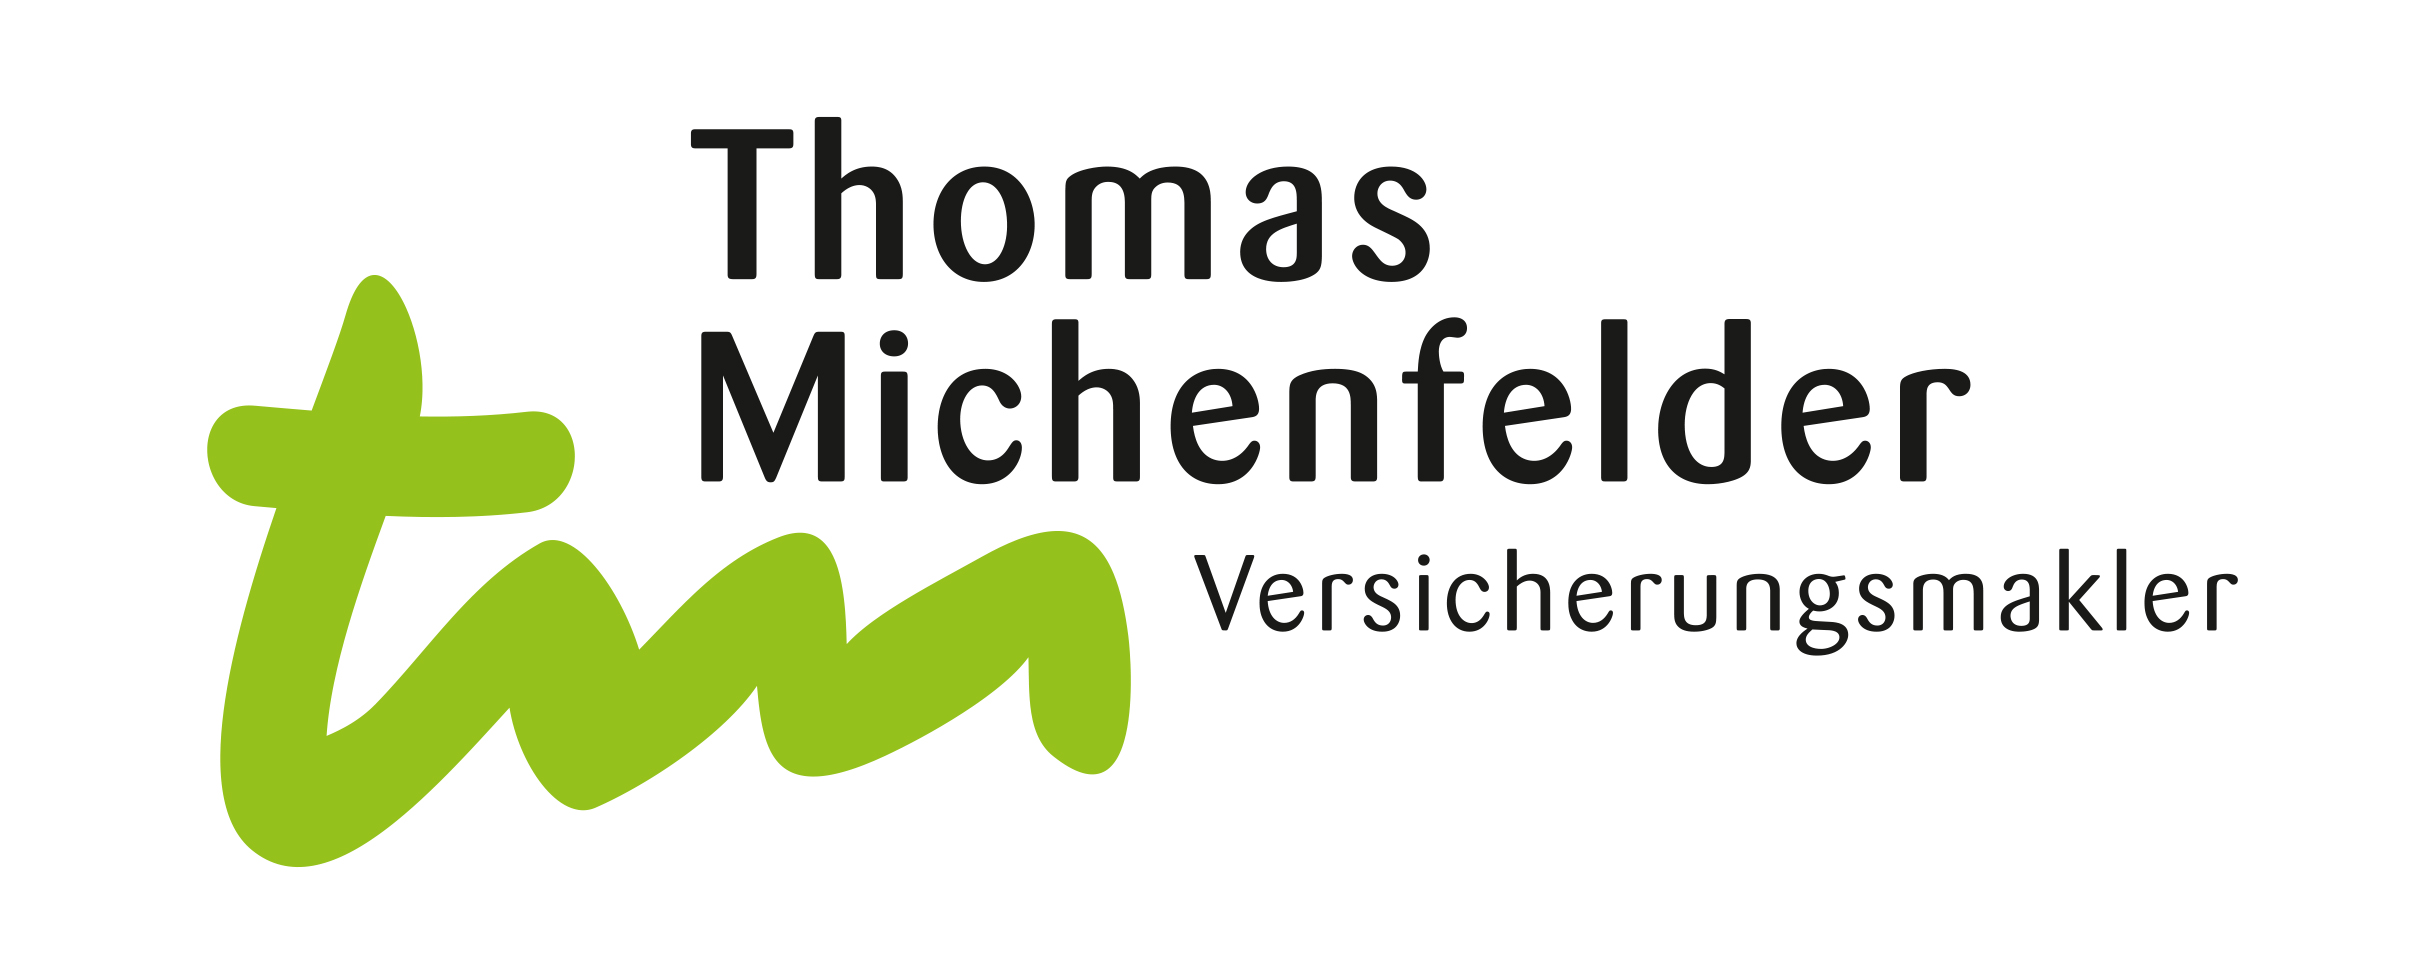 Thomas Michenfelder Versicherungsmakler